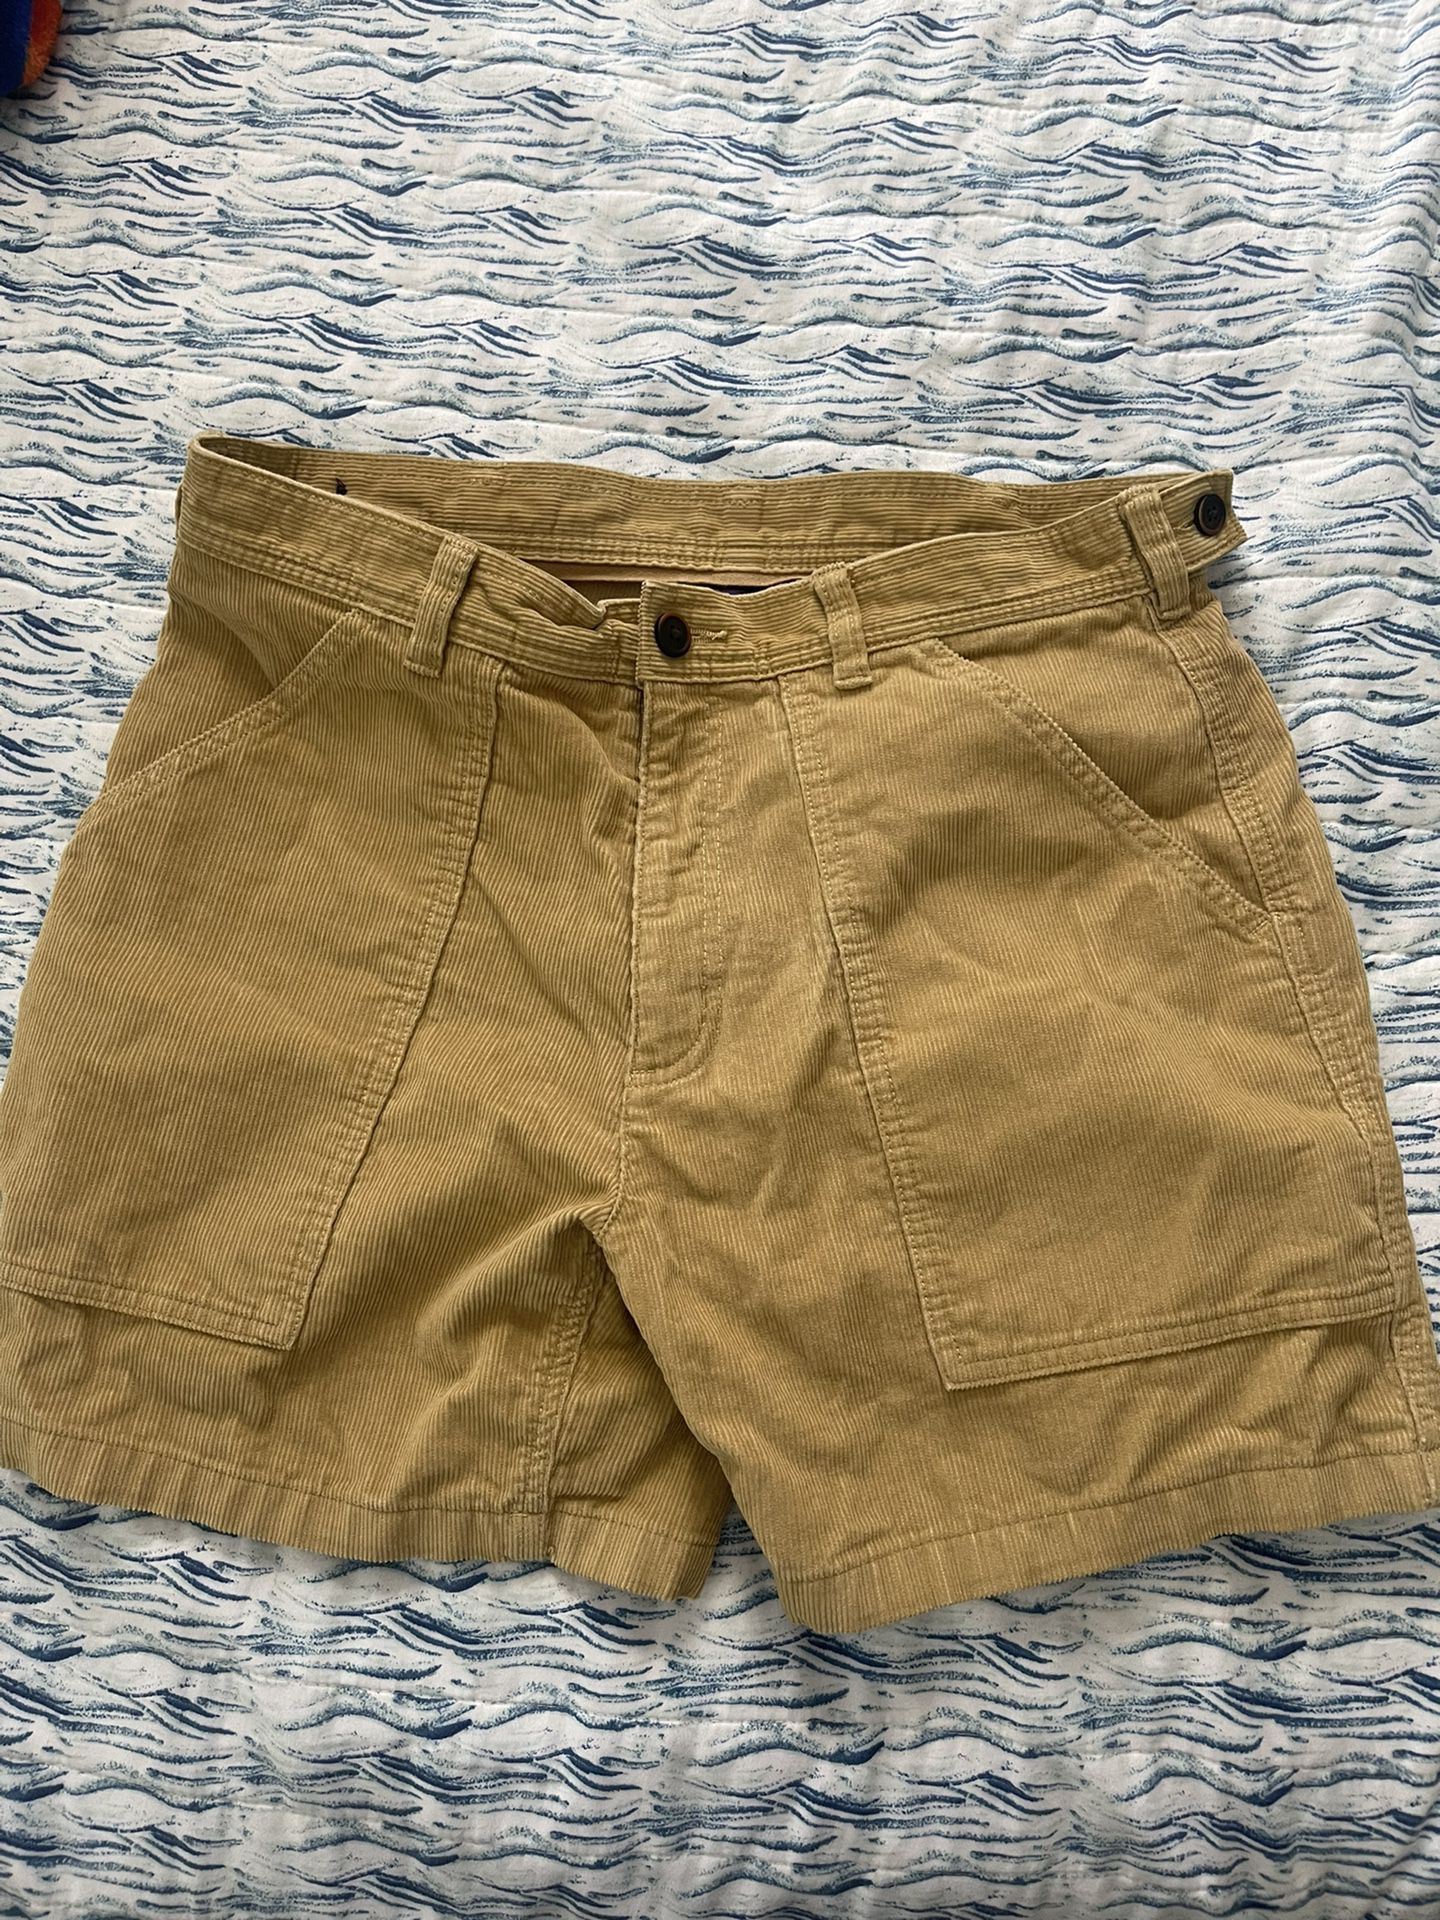 vintage patagonia shorts